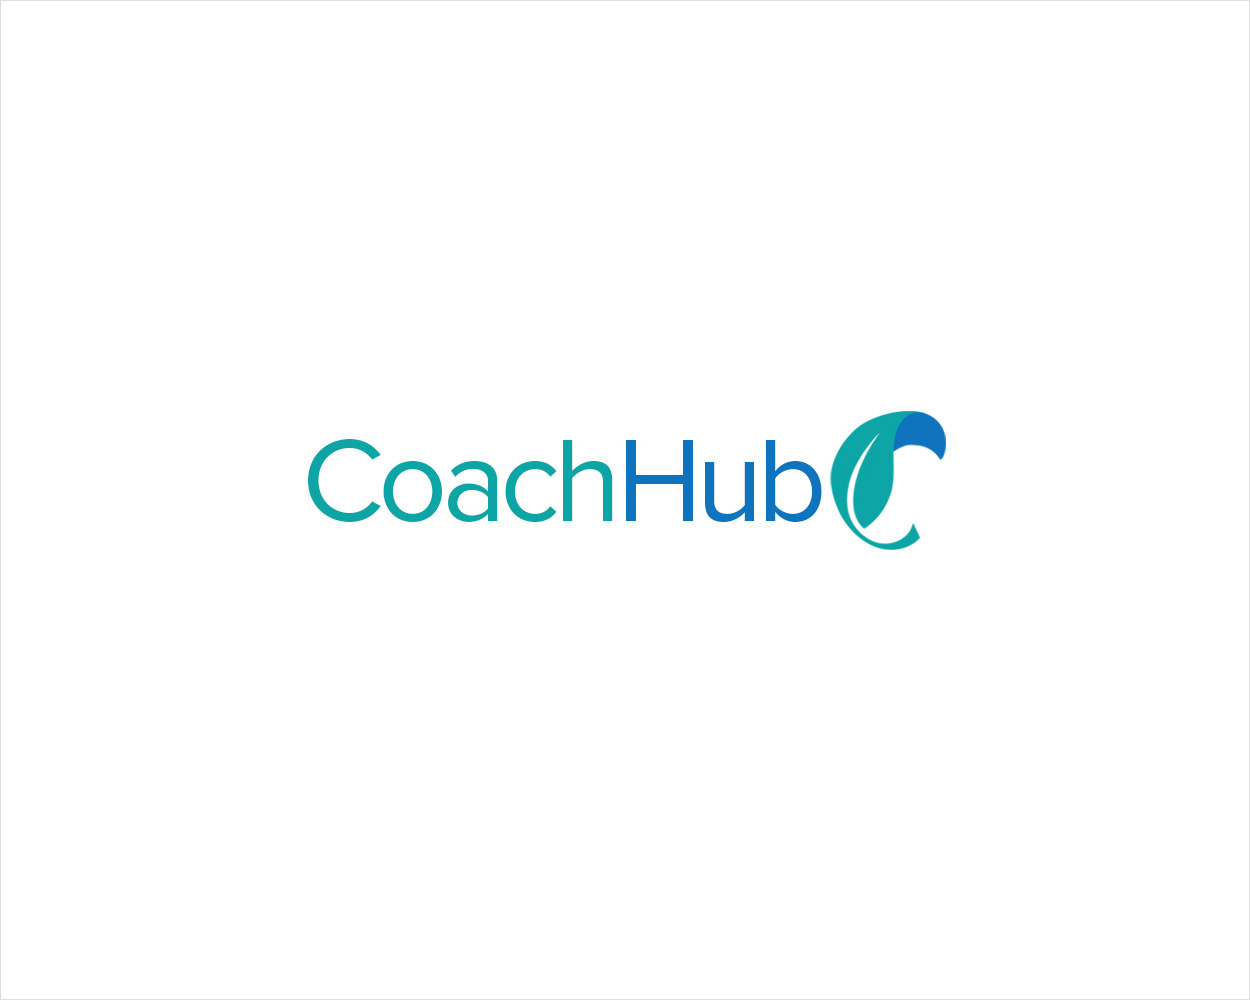 Coach Hub with curled leaf